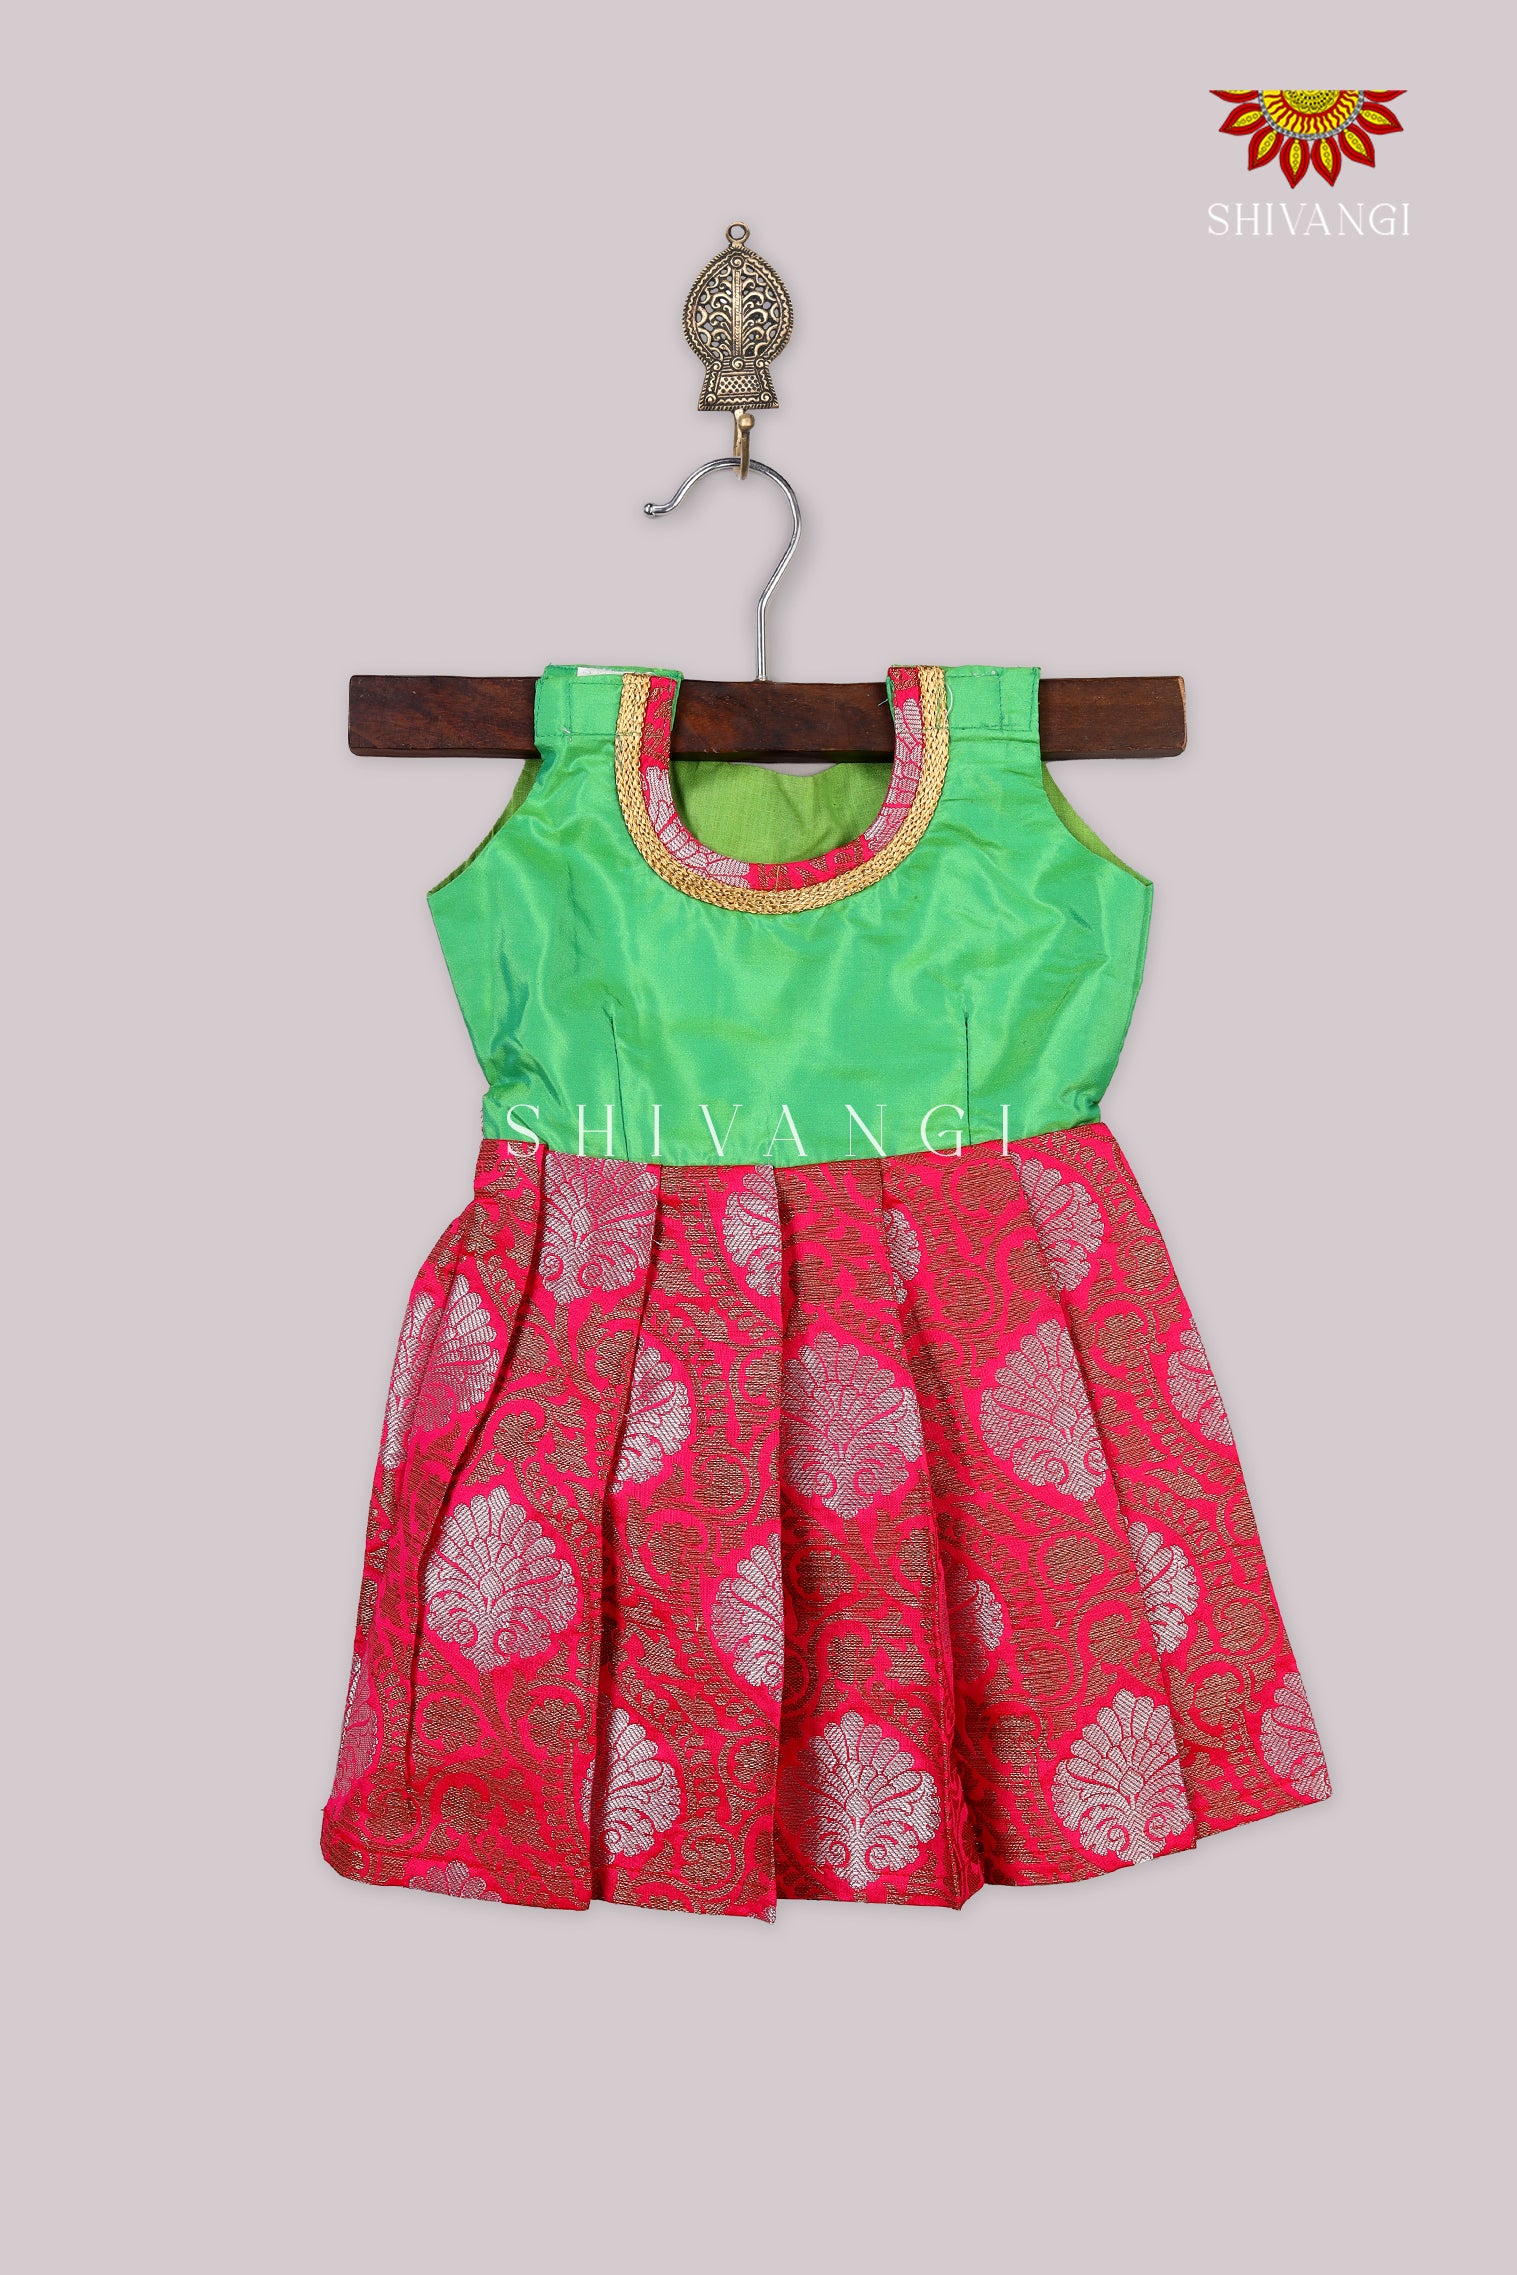 Baby Girl Dresses 9-12 Months | Dresses for Girls online - faye